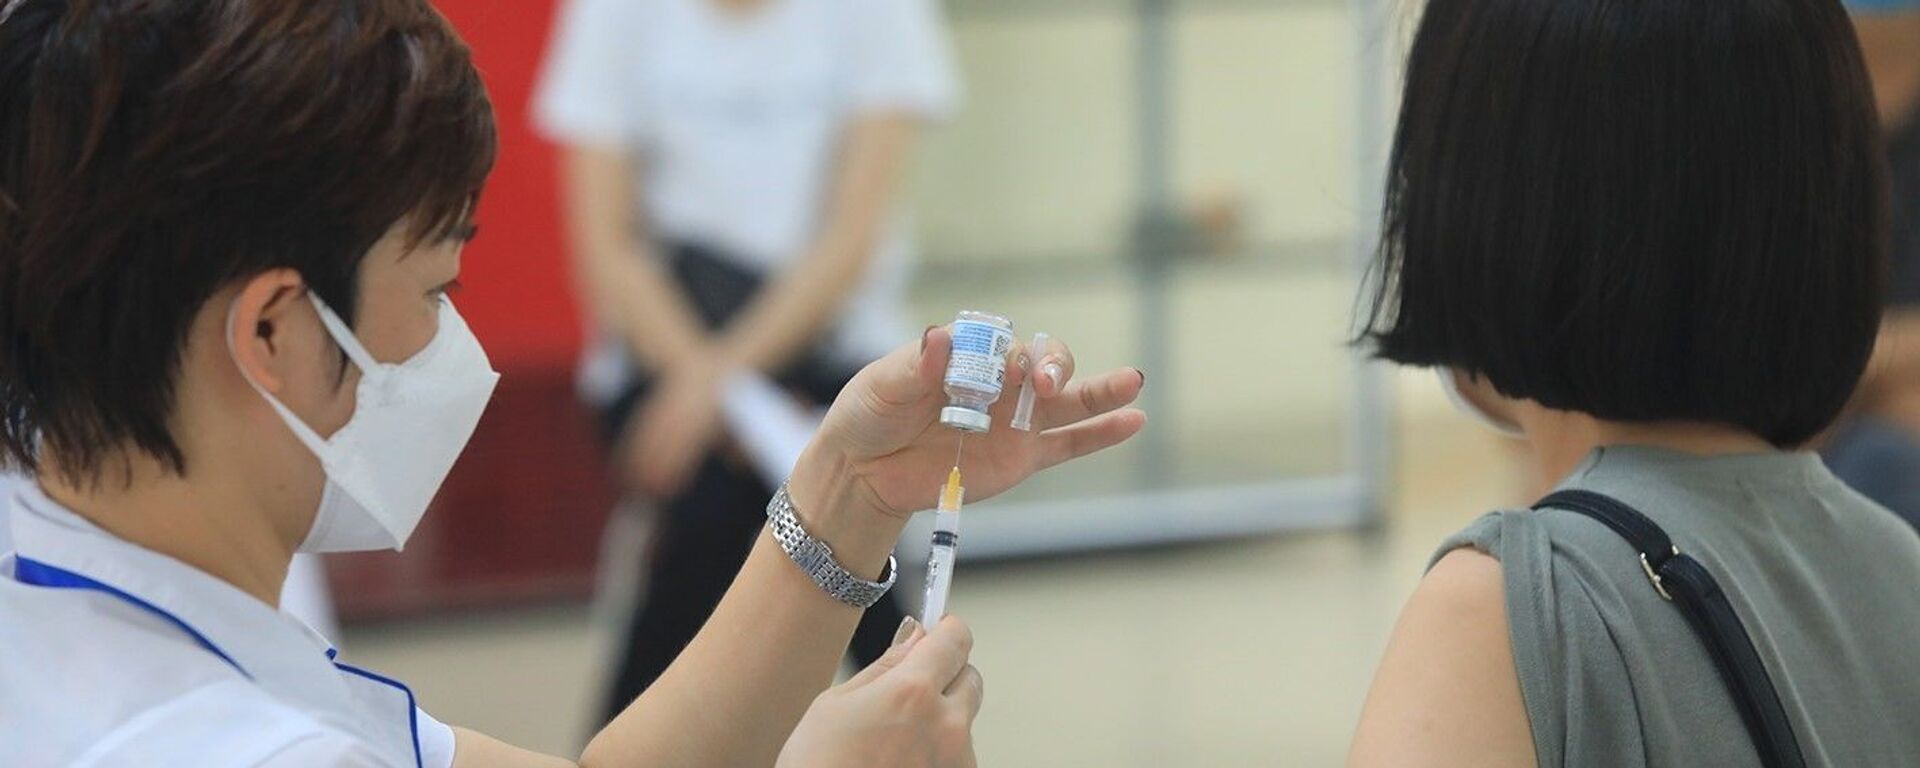 Các loại vaccine được sử dụng để tiêm cho người dân gồm: AstraZeneca, Pfizer và Moderna. - Sputnik Việt Nam, 1920, 18.09.2021